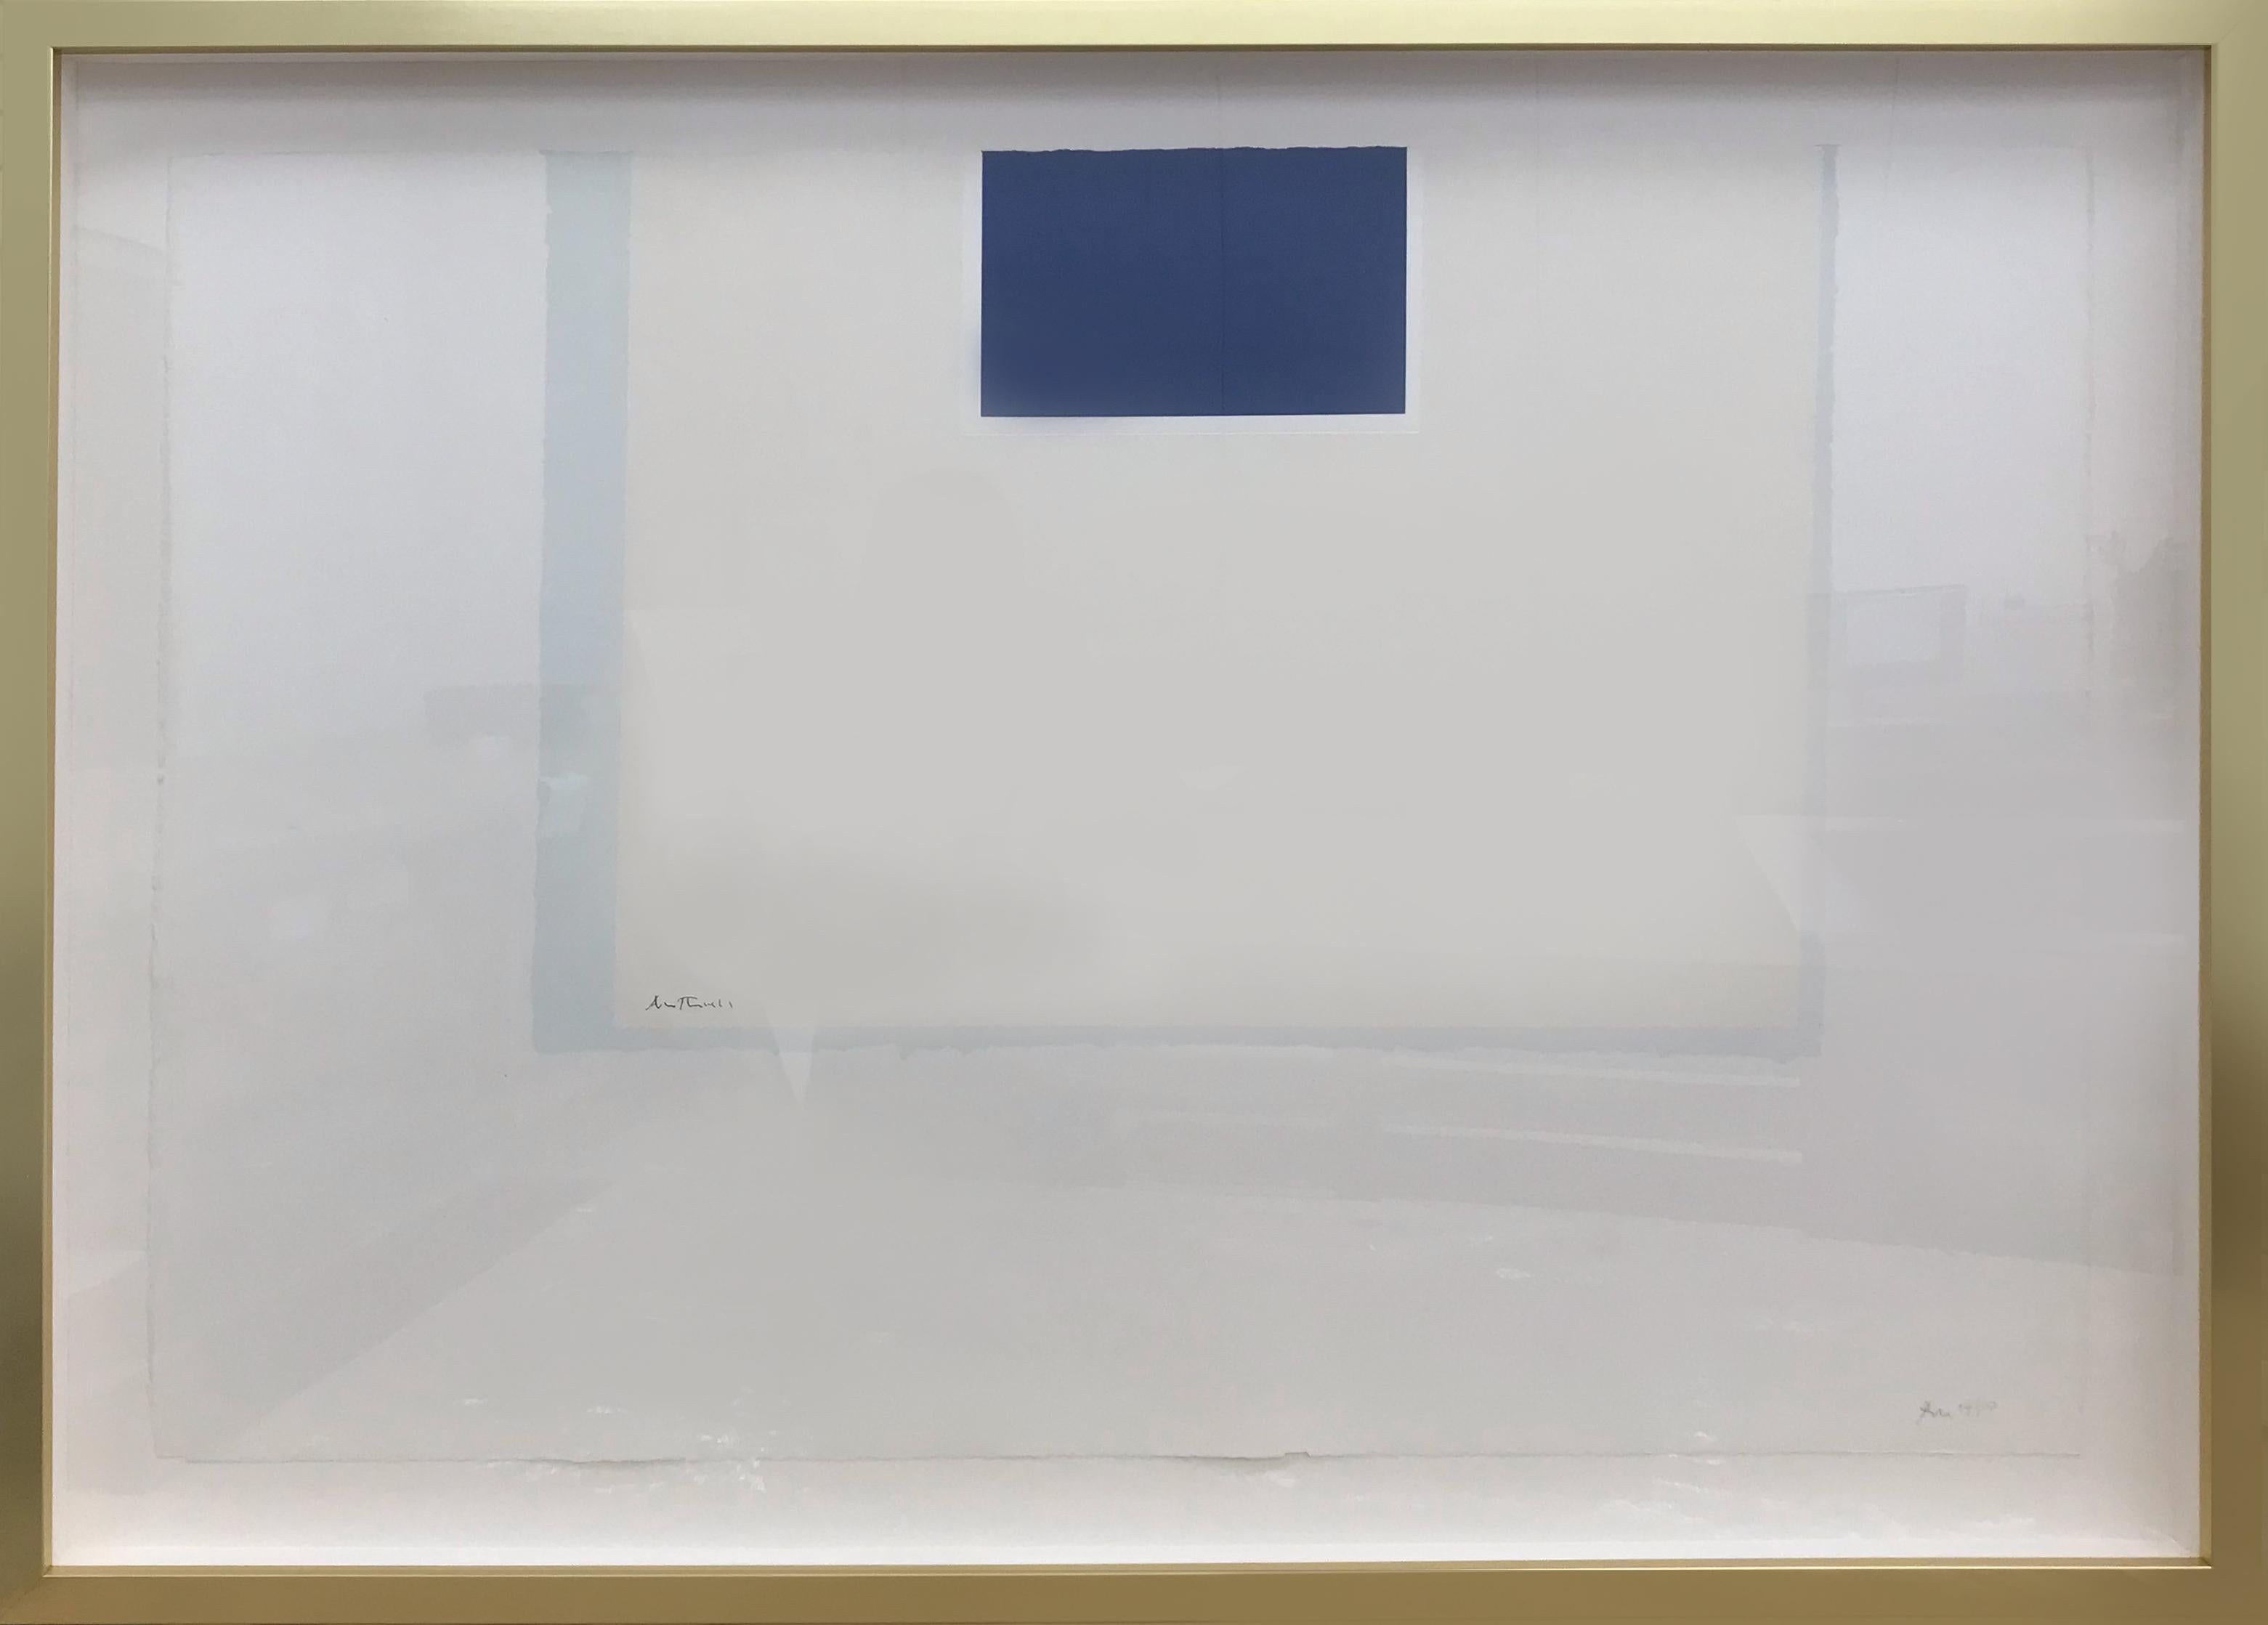  
ROBERT MOTHERWELL          
(1915-1991)

Série II de Londres : Sans titre (bleu/bleu pâle)


Sérigraphie en couleur sur J.B. Papier vert, c. 1971
Paraphe et numérotation de l'artiste, signature complète dans la plaque et estampage à froid
Edition